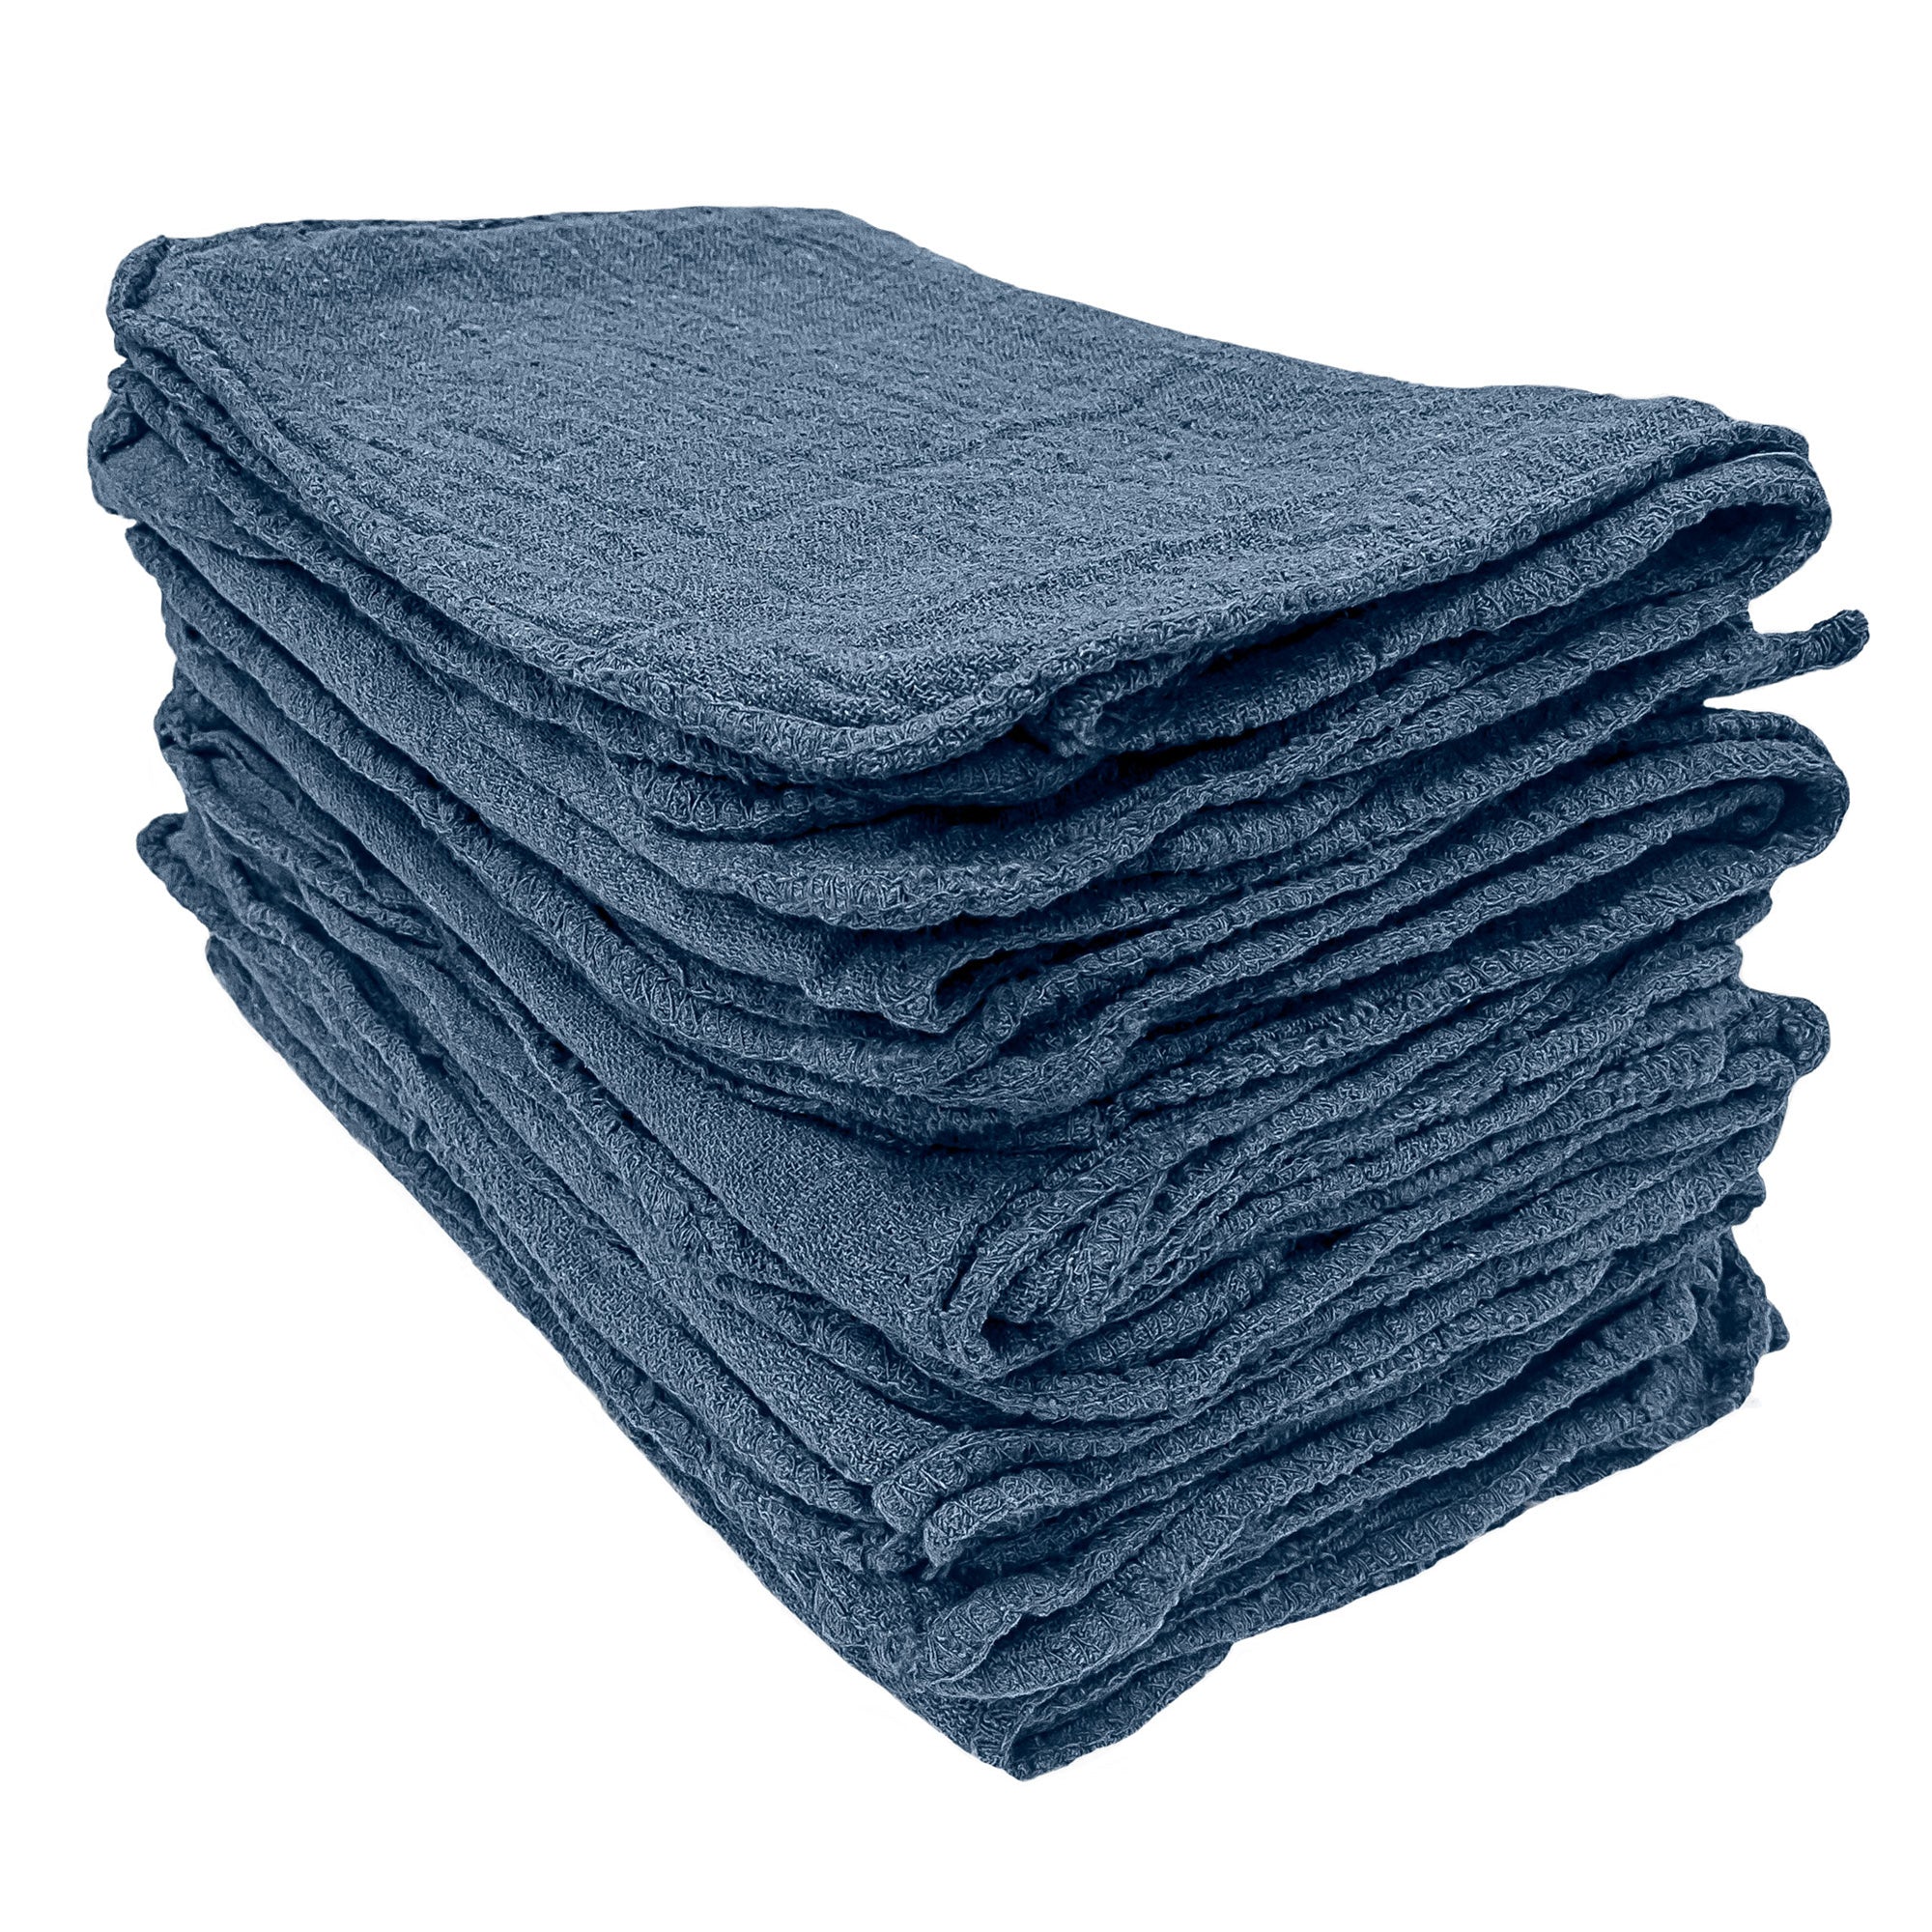 Detailer's Preference Automotive Shop Towels, Cotton, 11x12, 50